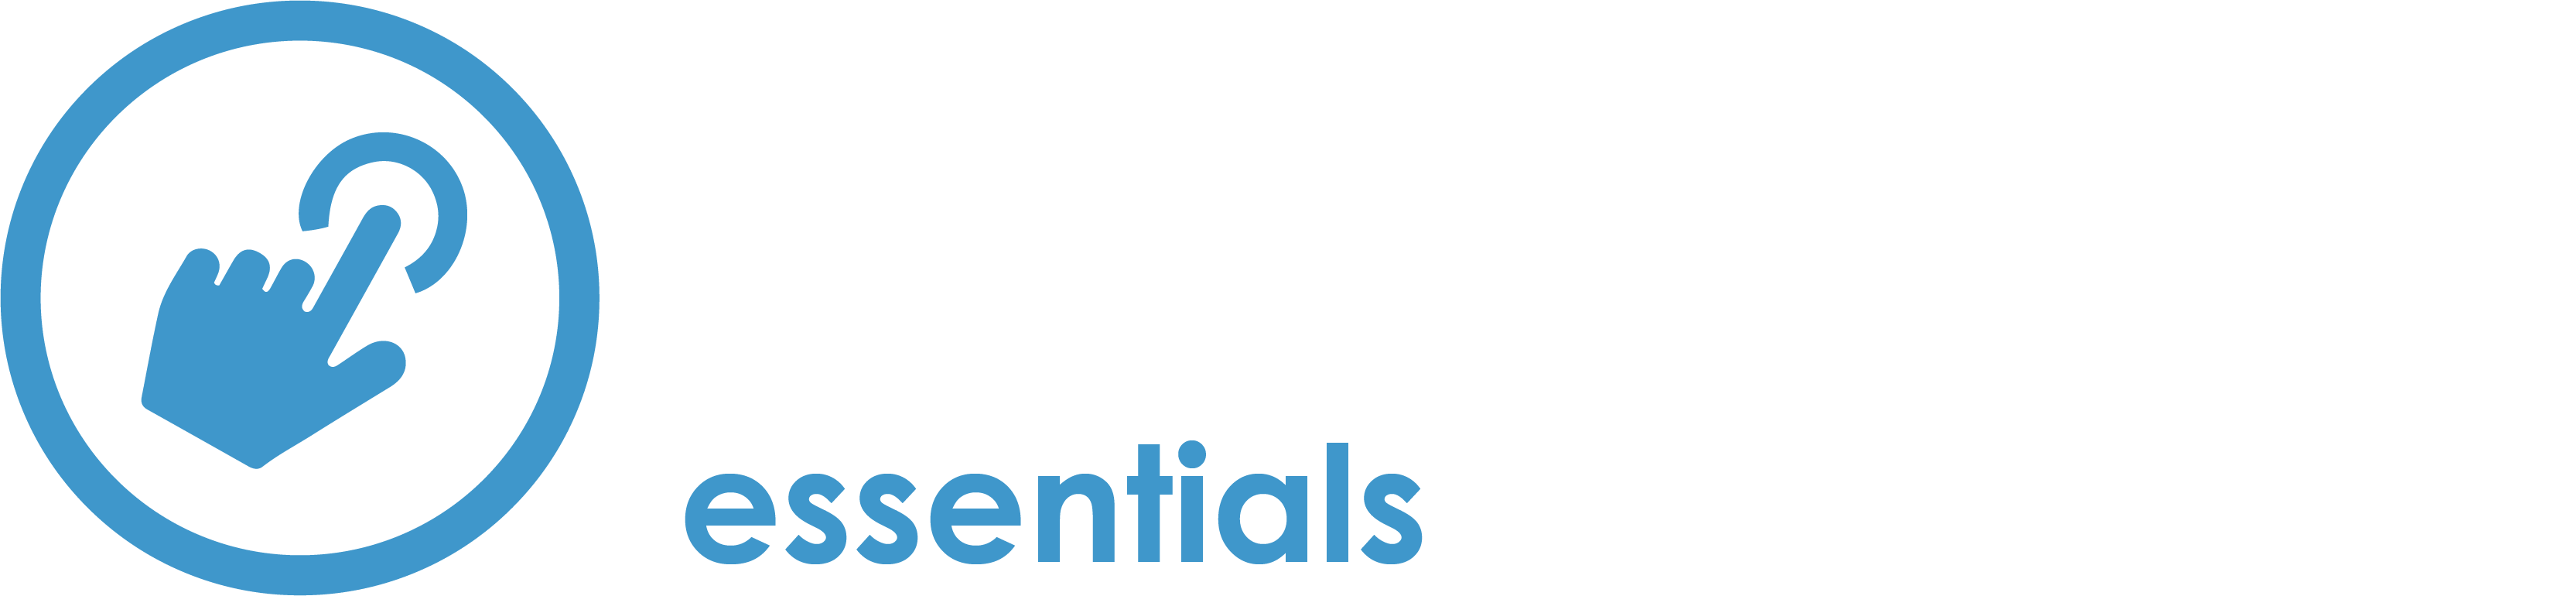 xCenta Essentials